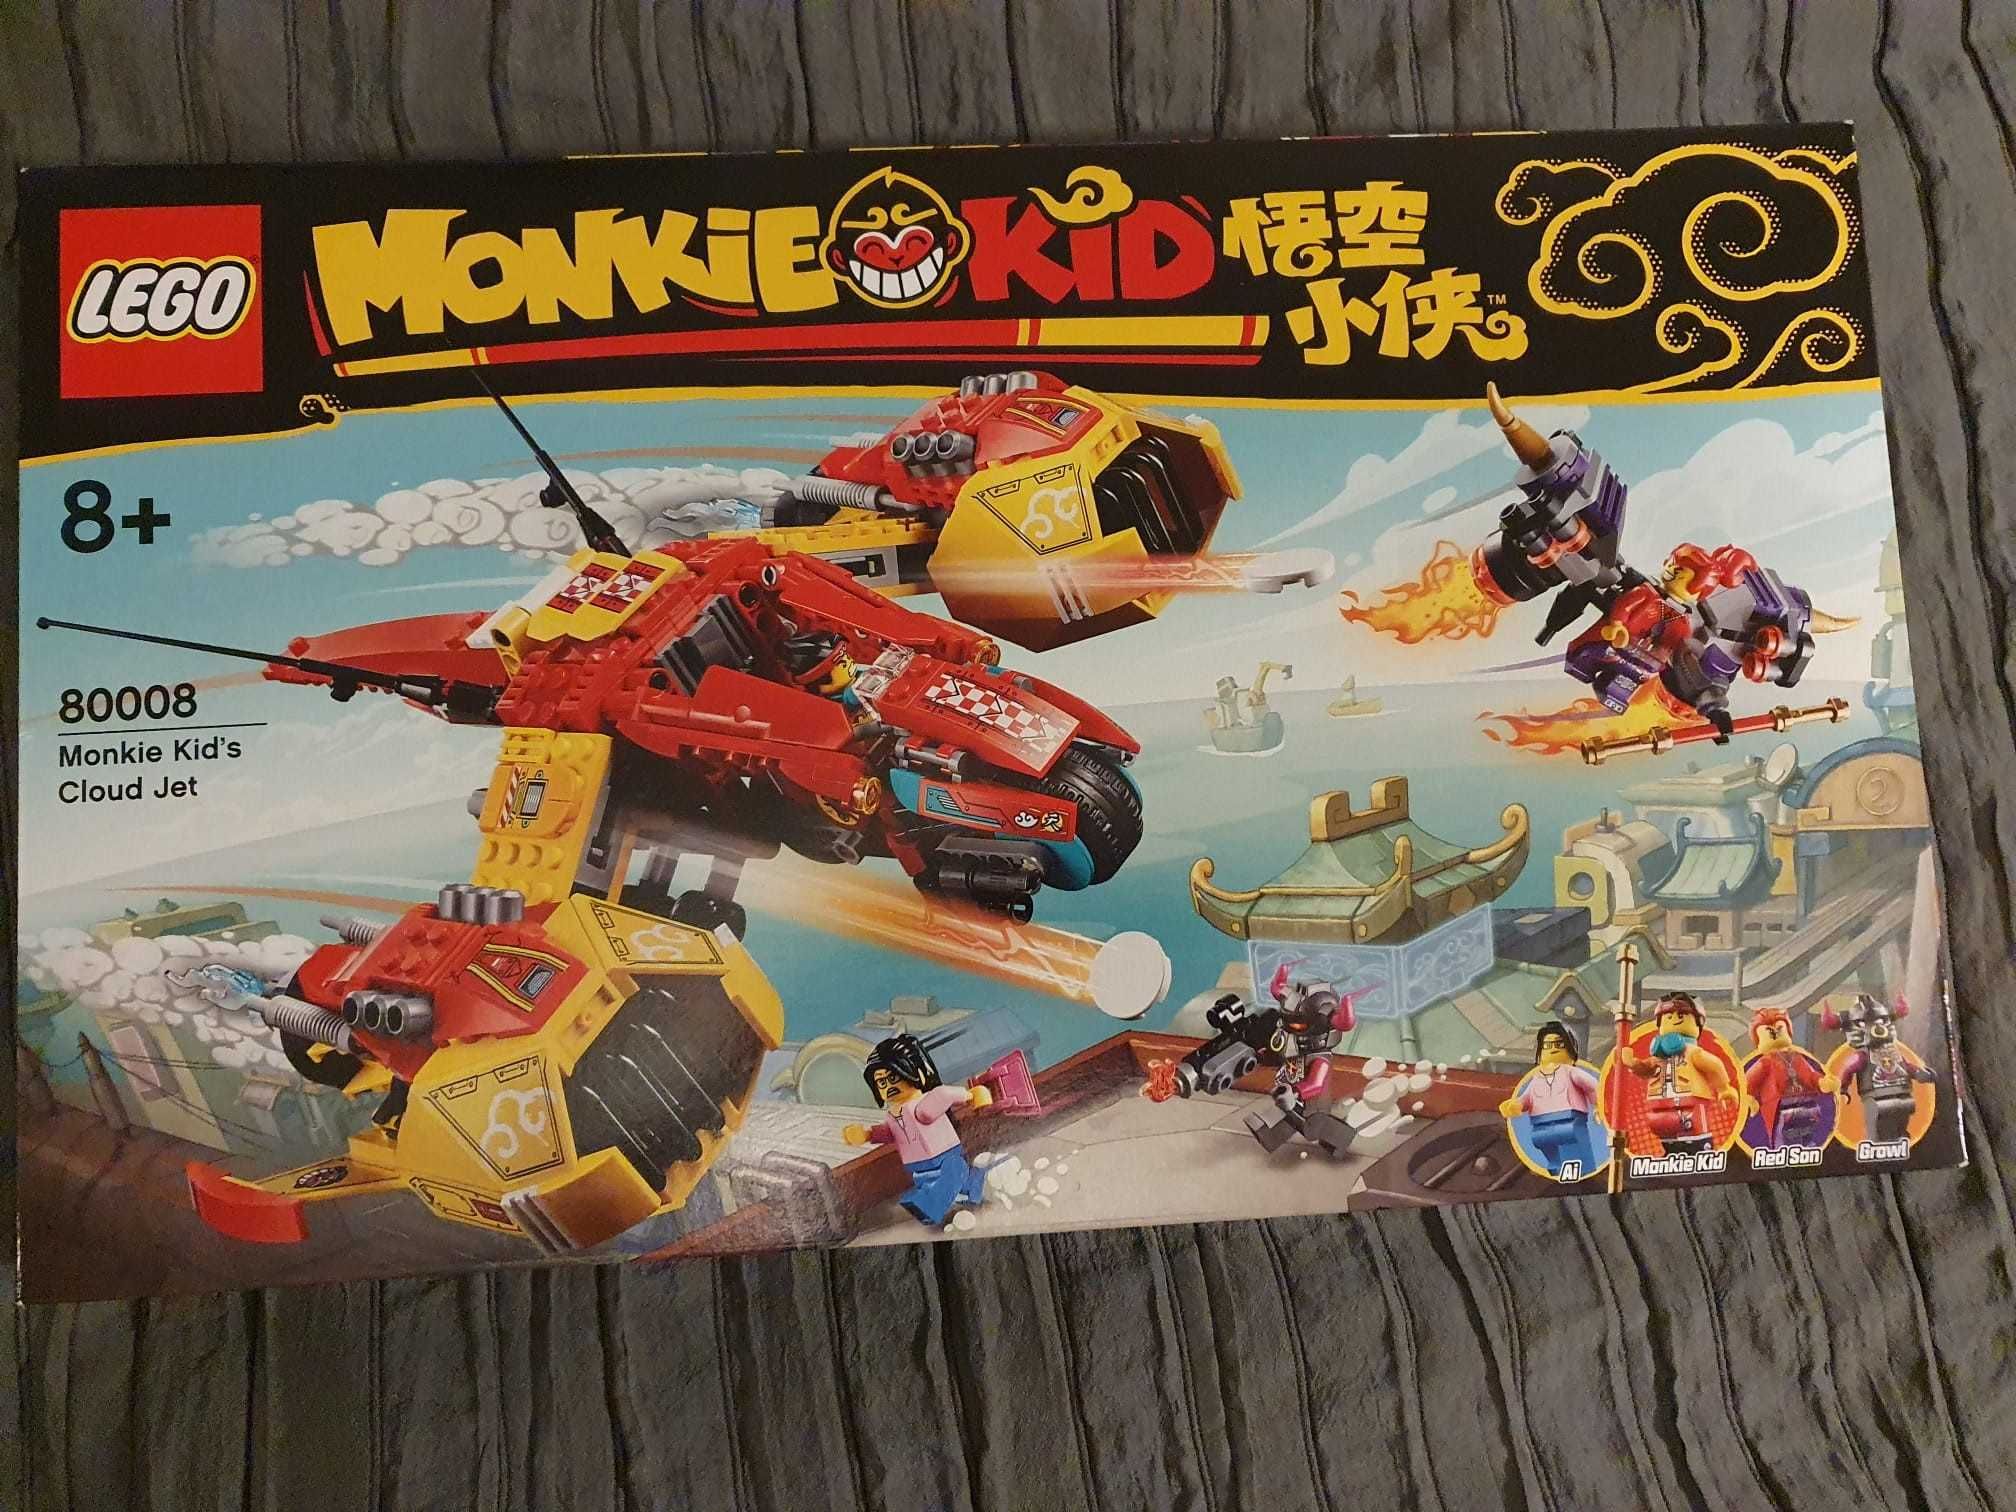 LEGO Monkie Kid - Odrzutowiec Monkie Kida ( LEGO 80008 )